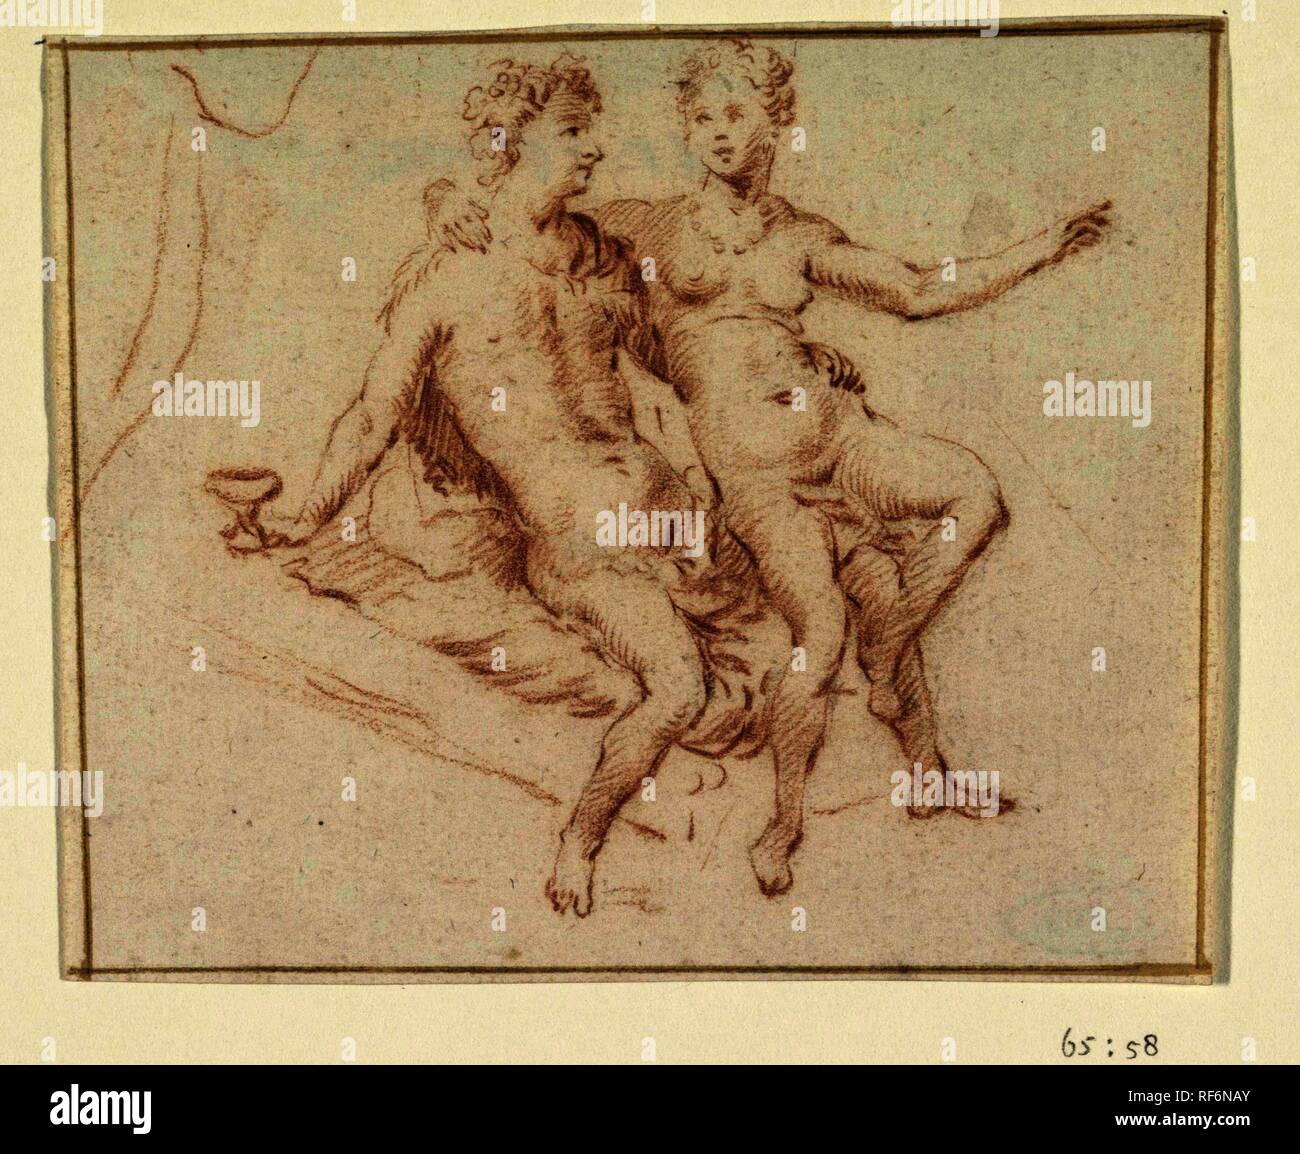 Amore giovane. Relatore per parere: anonimo. Dating: 1600 - 1800. Misurazioni: h 98 mm × W 120 mm. Museo: Rijksmuseum Amsterdam. Foto Stock